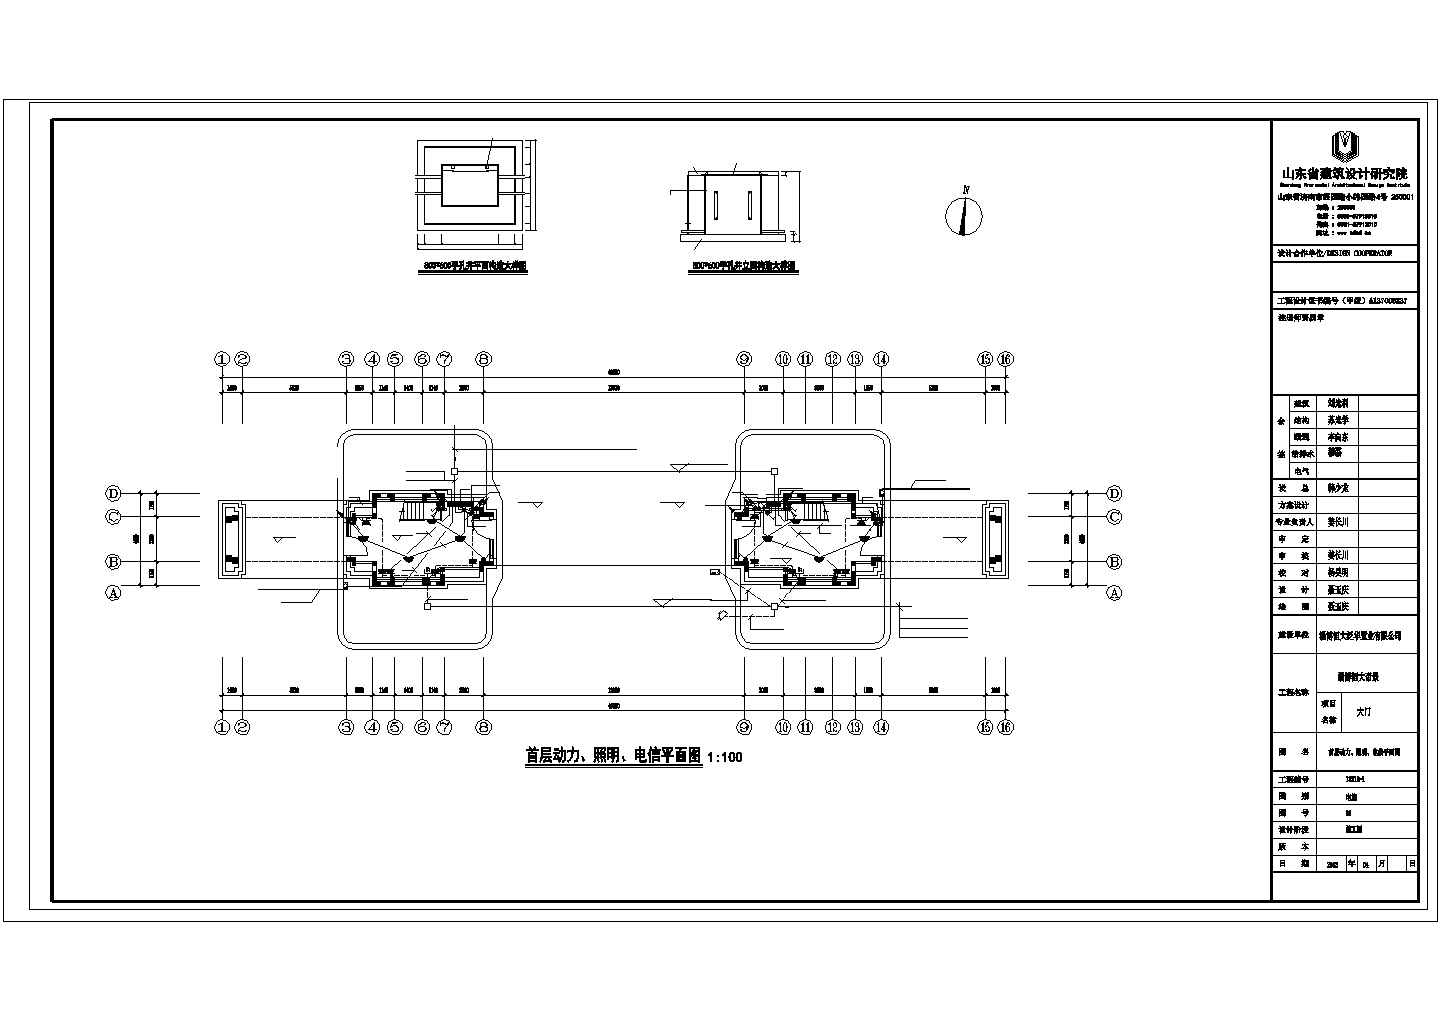 太仓市馨苑家园居住区3层欧式入口大门全套电气系统设计CAD图纸